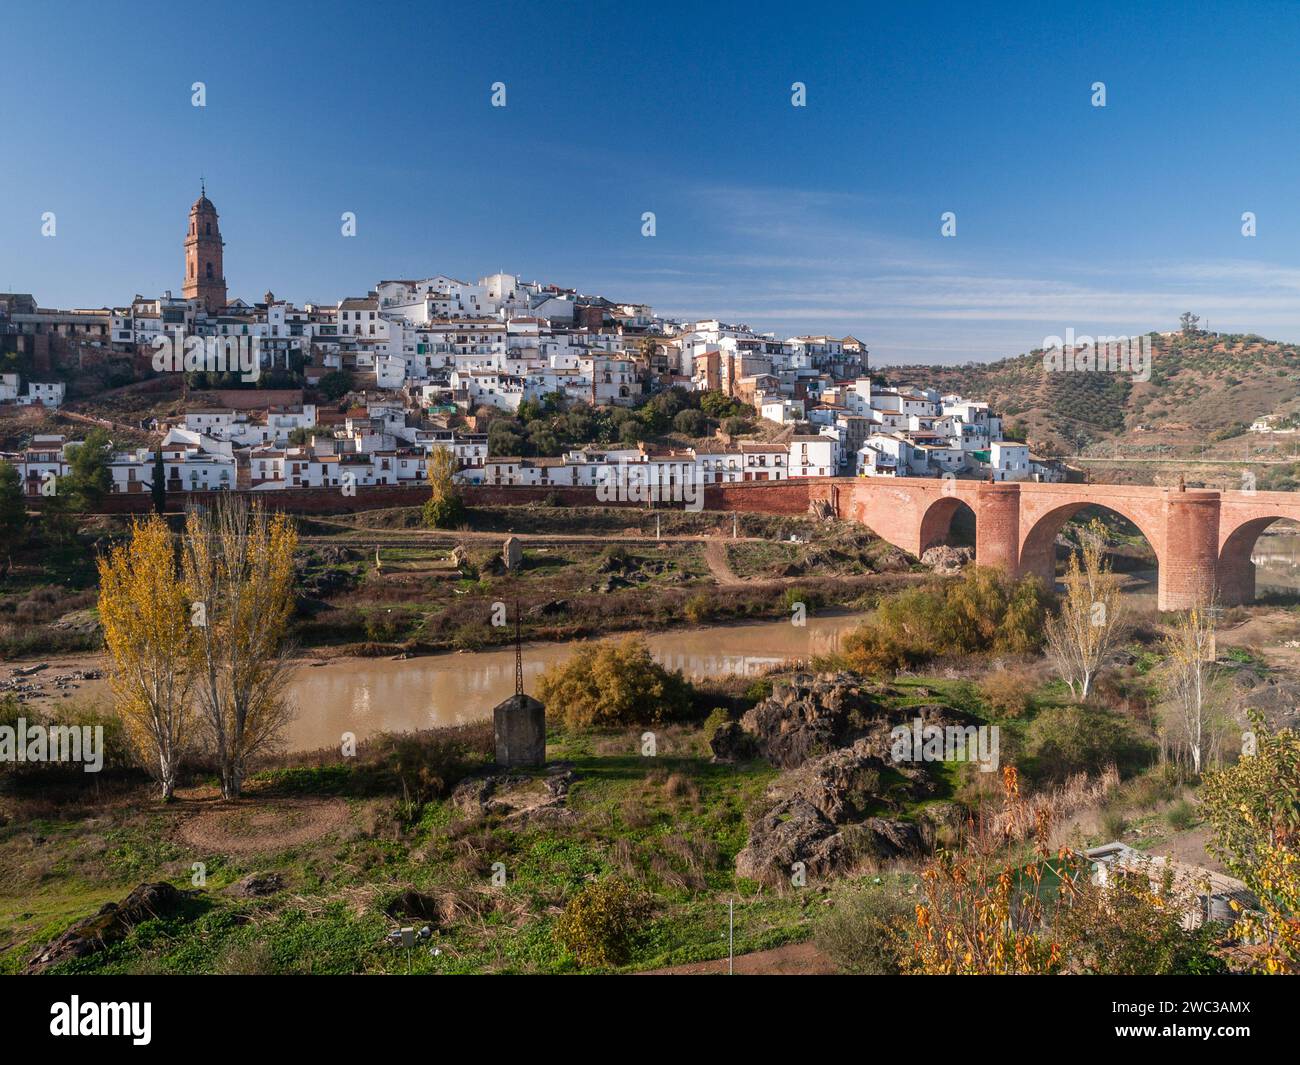 Vue panoramique sur le village andalou typique avec des maisons blanches, une rivière et un pont. Montoro, Cordoue, Espagne. Banque D'Images